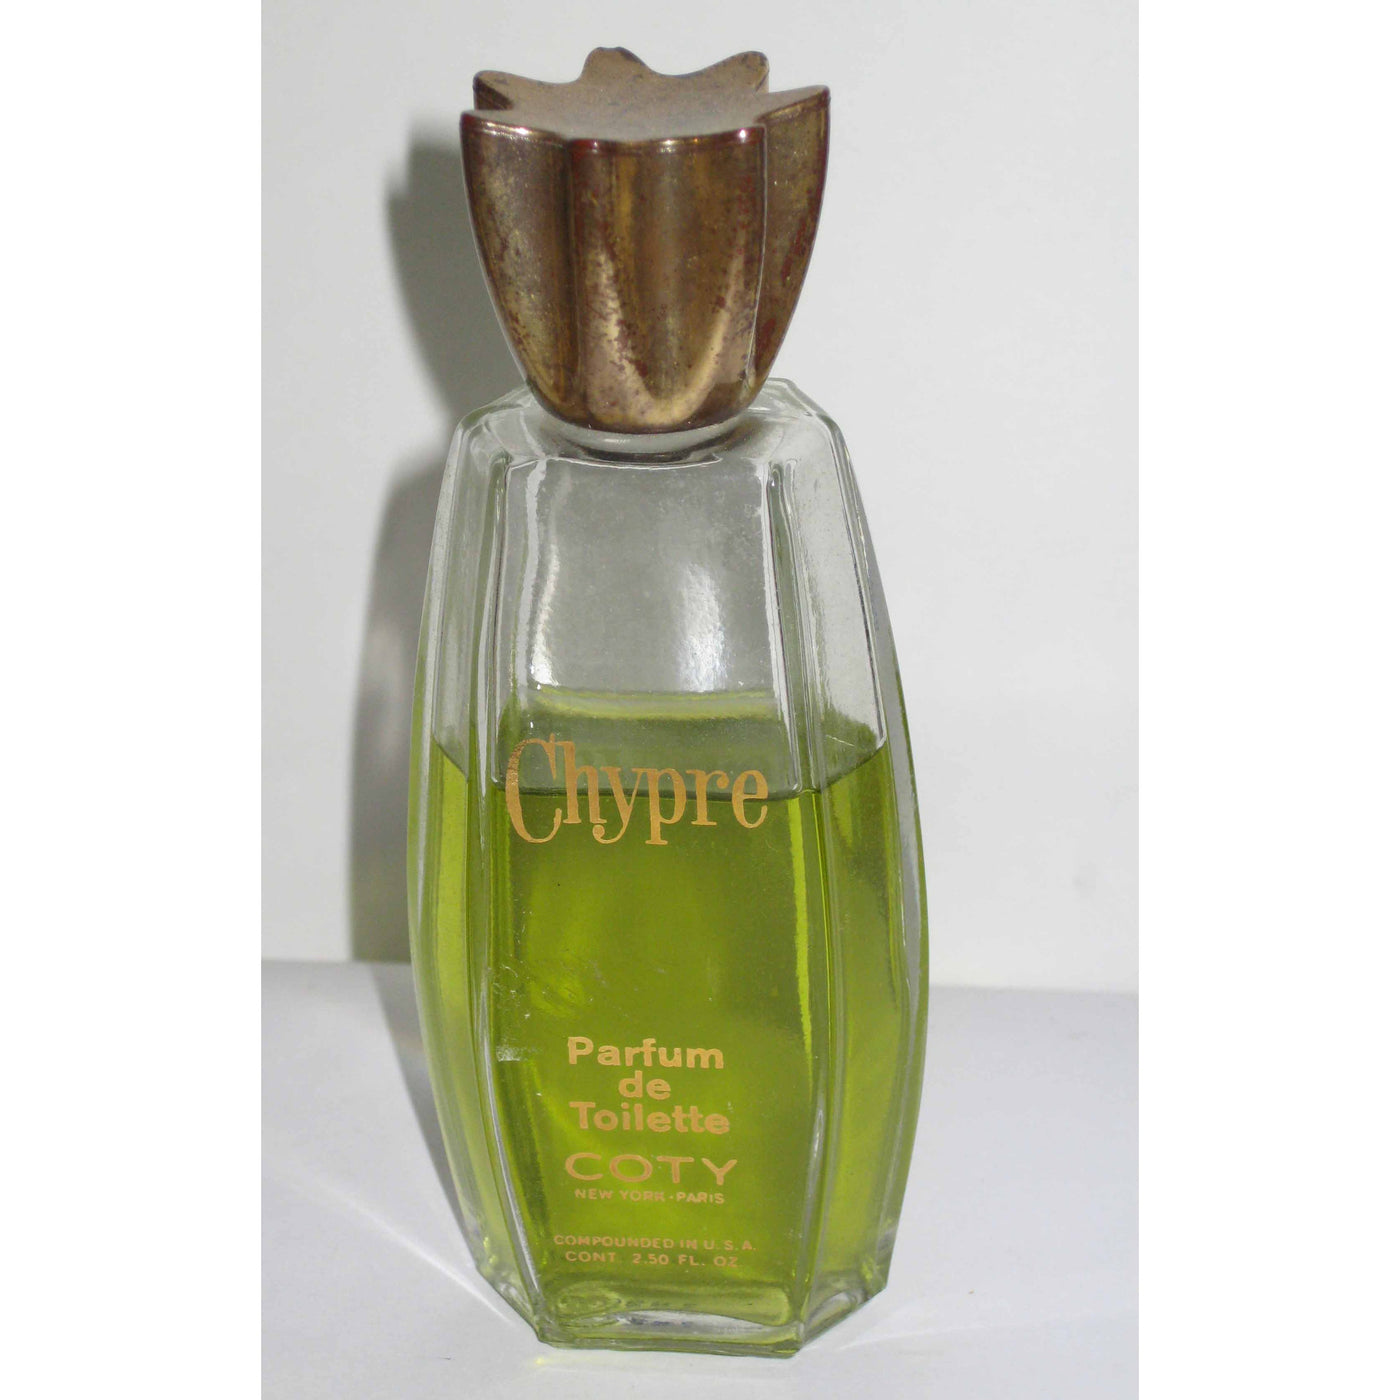 Vintage Coty Chypre Parfum de Toilette